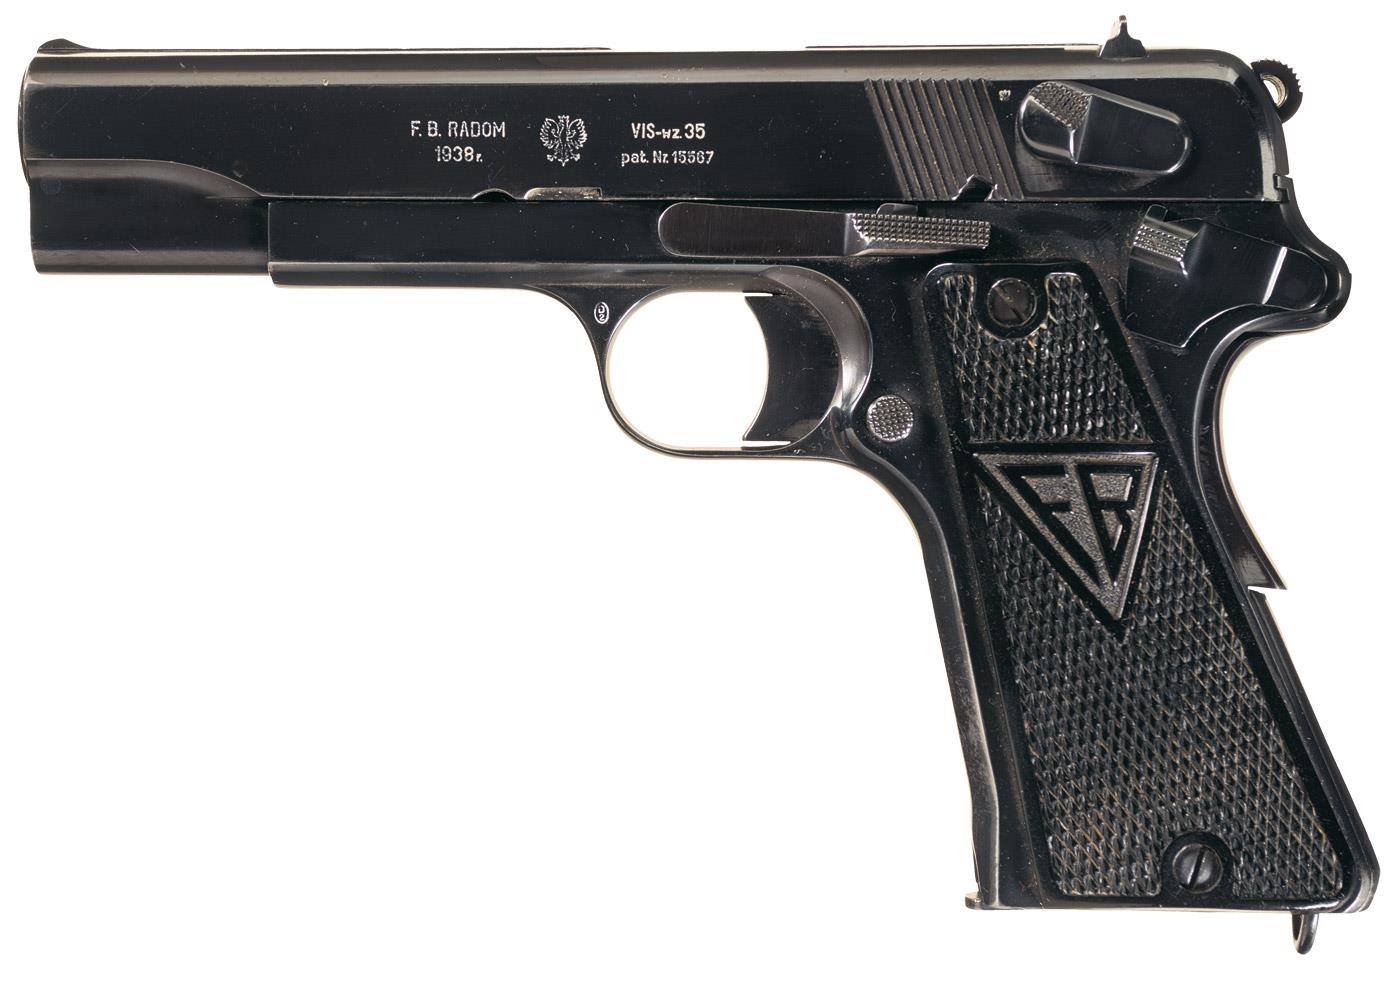 vis radom pistol serial numbers